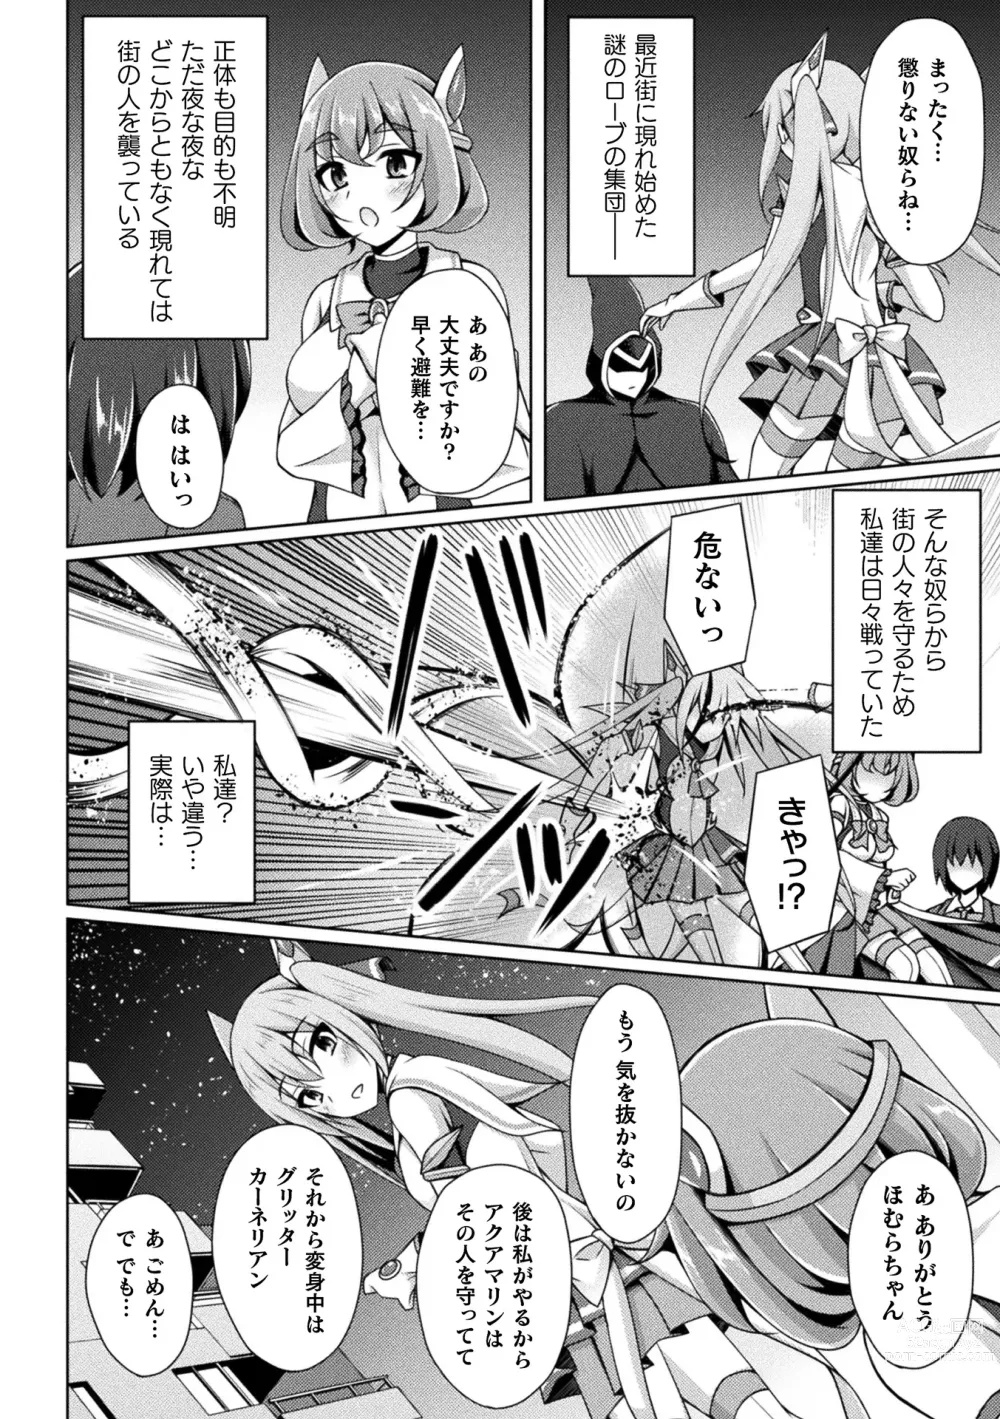 Page 2 of manga Kougyoku Tenki Glitter Stars ep1-4